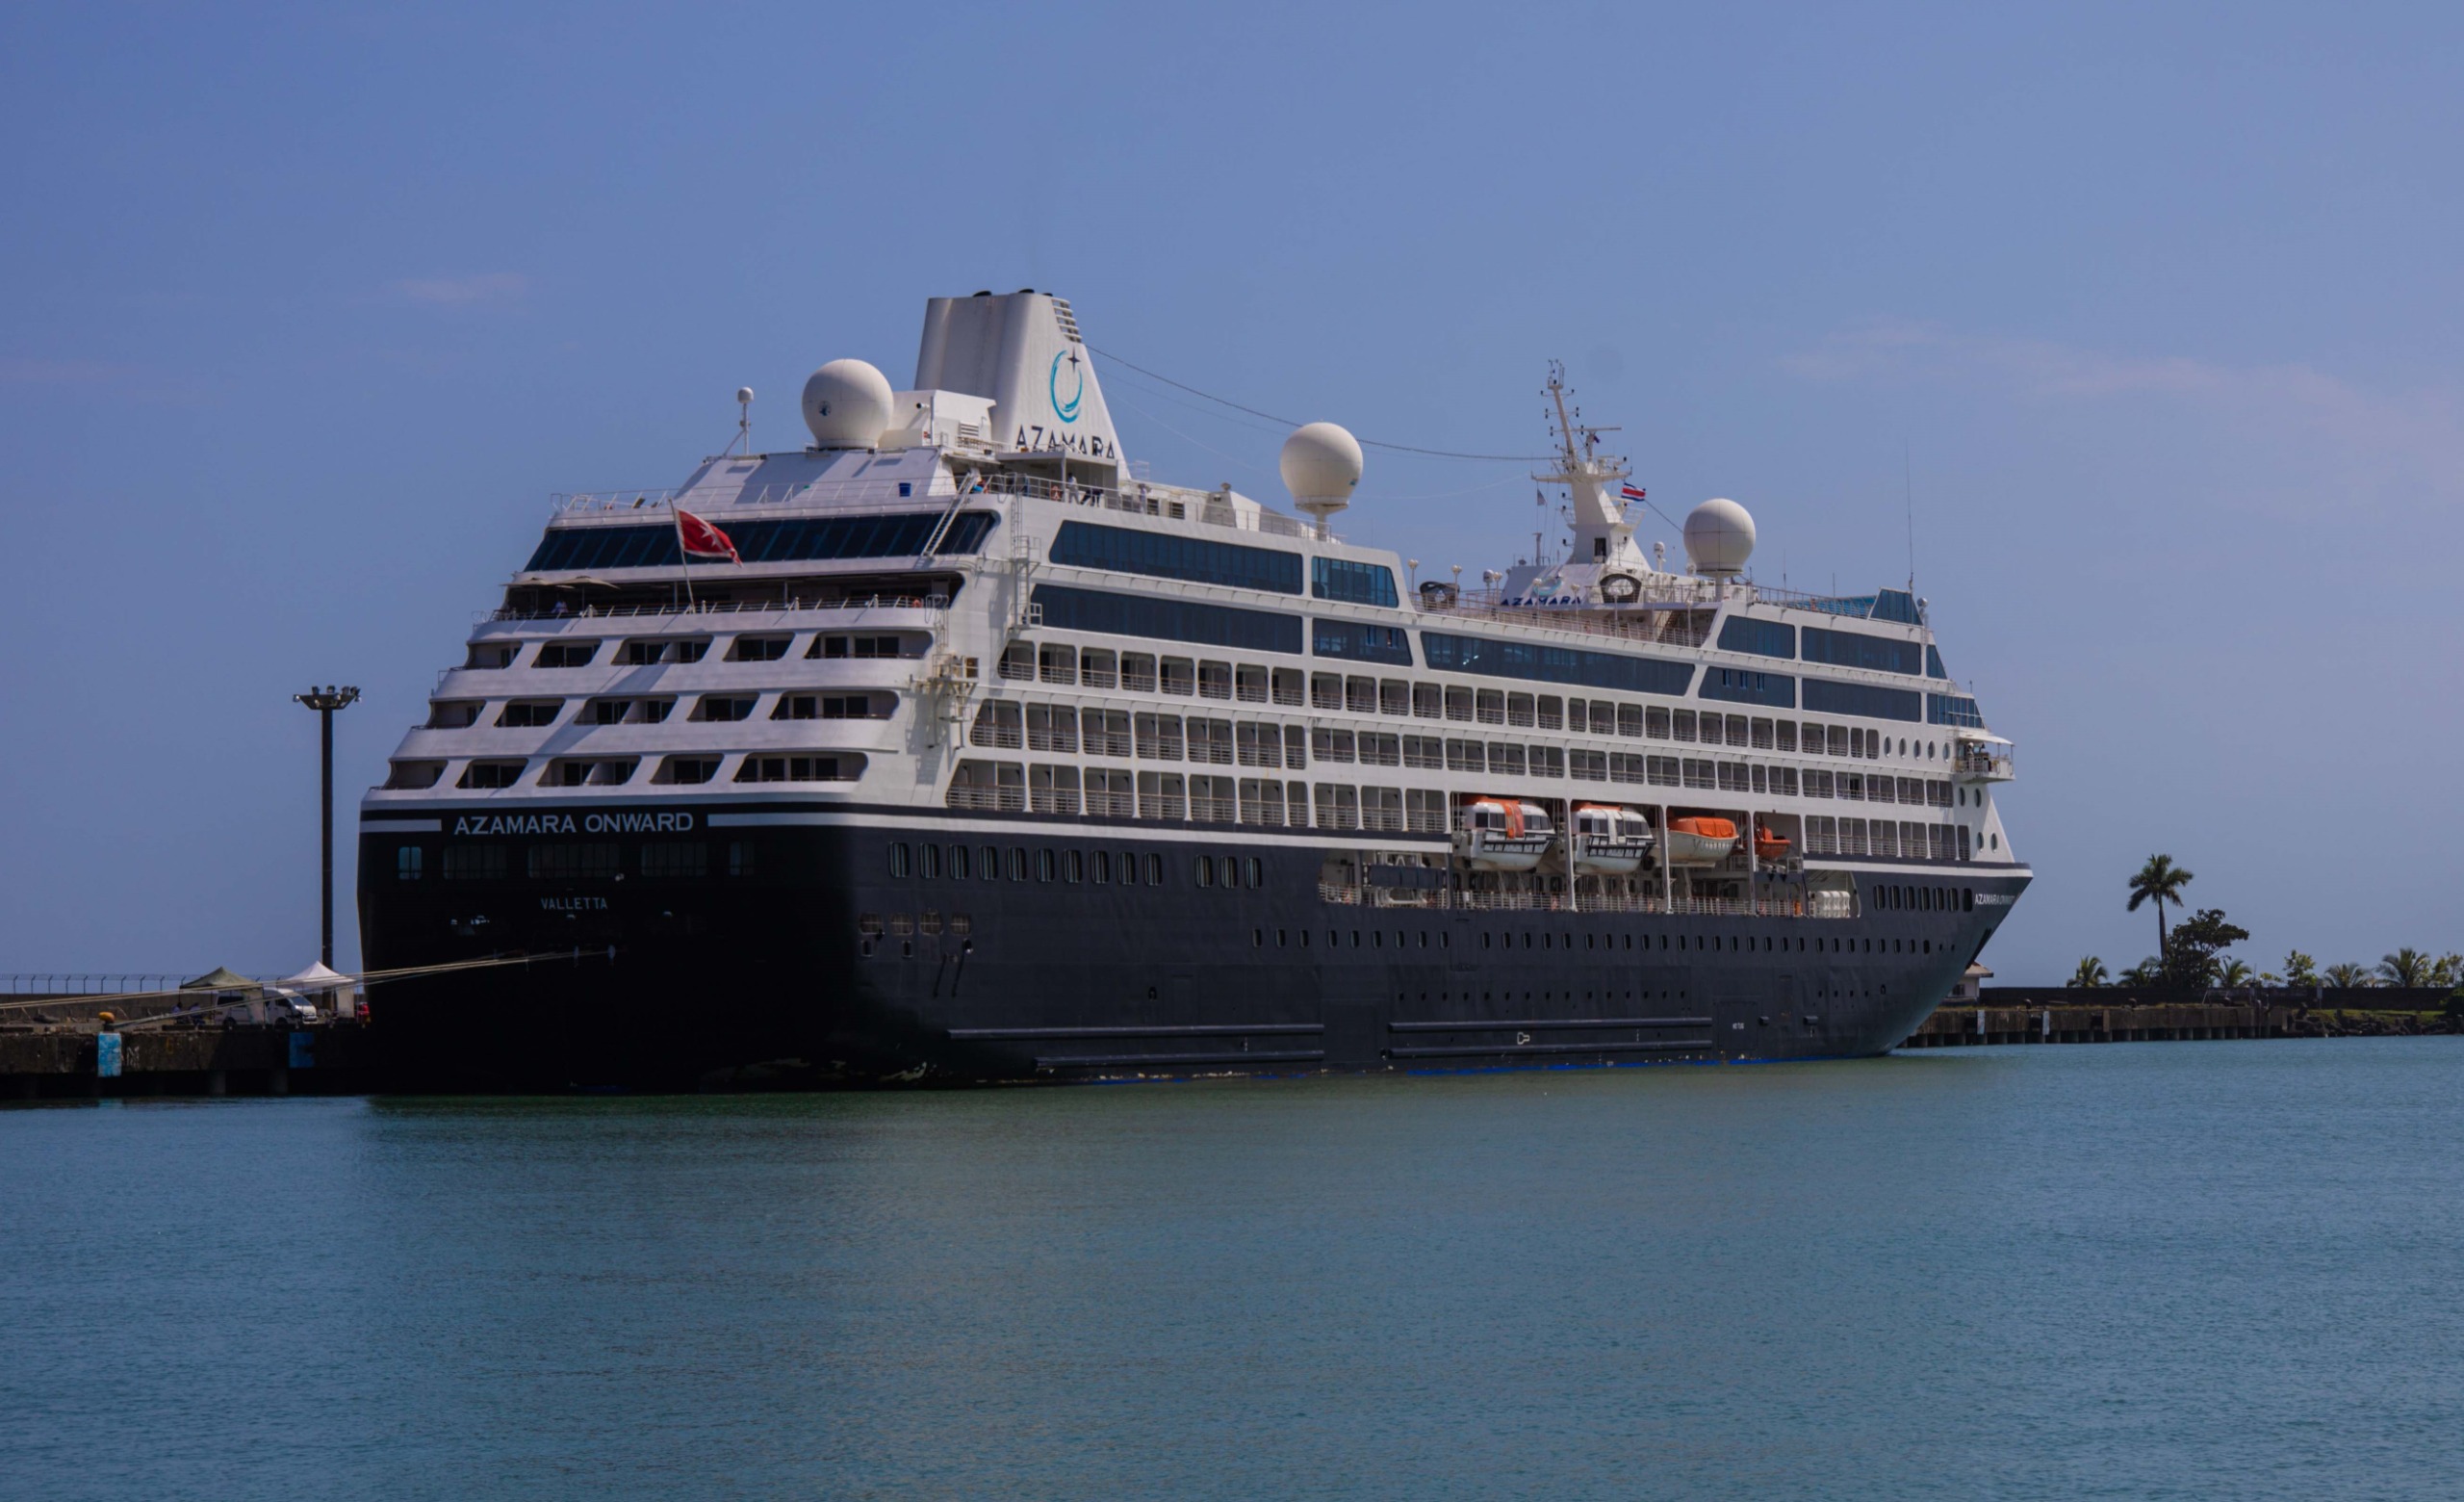 Crucero Azamara Onward llegó a Puerto Limón en su viaje alrededor del mundo